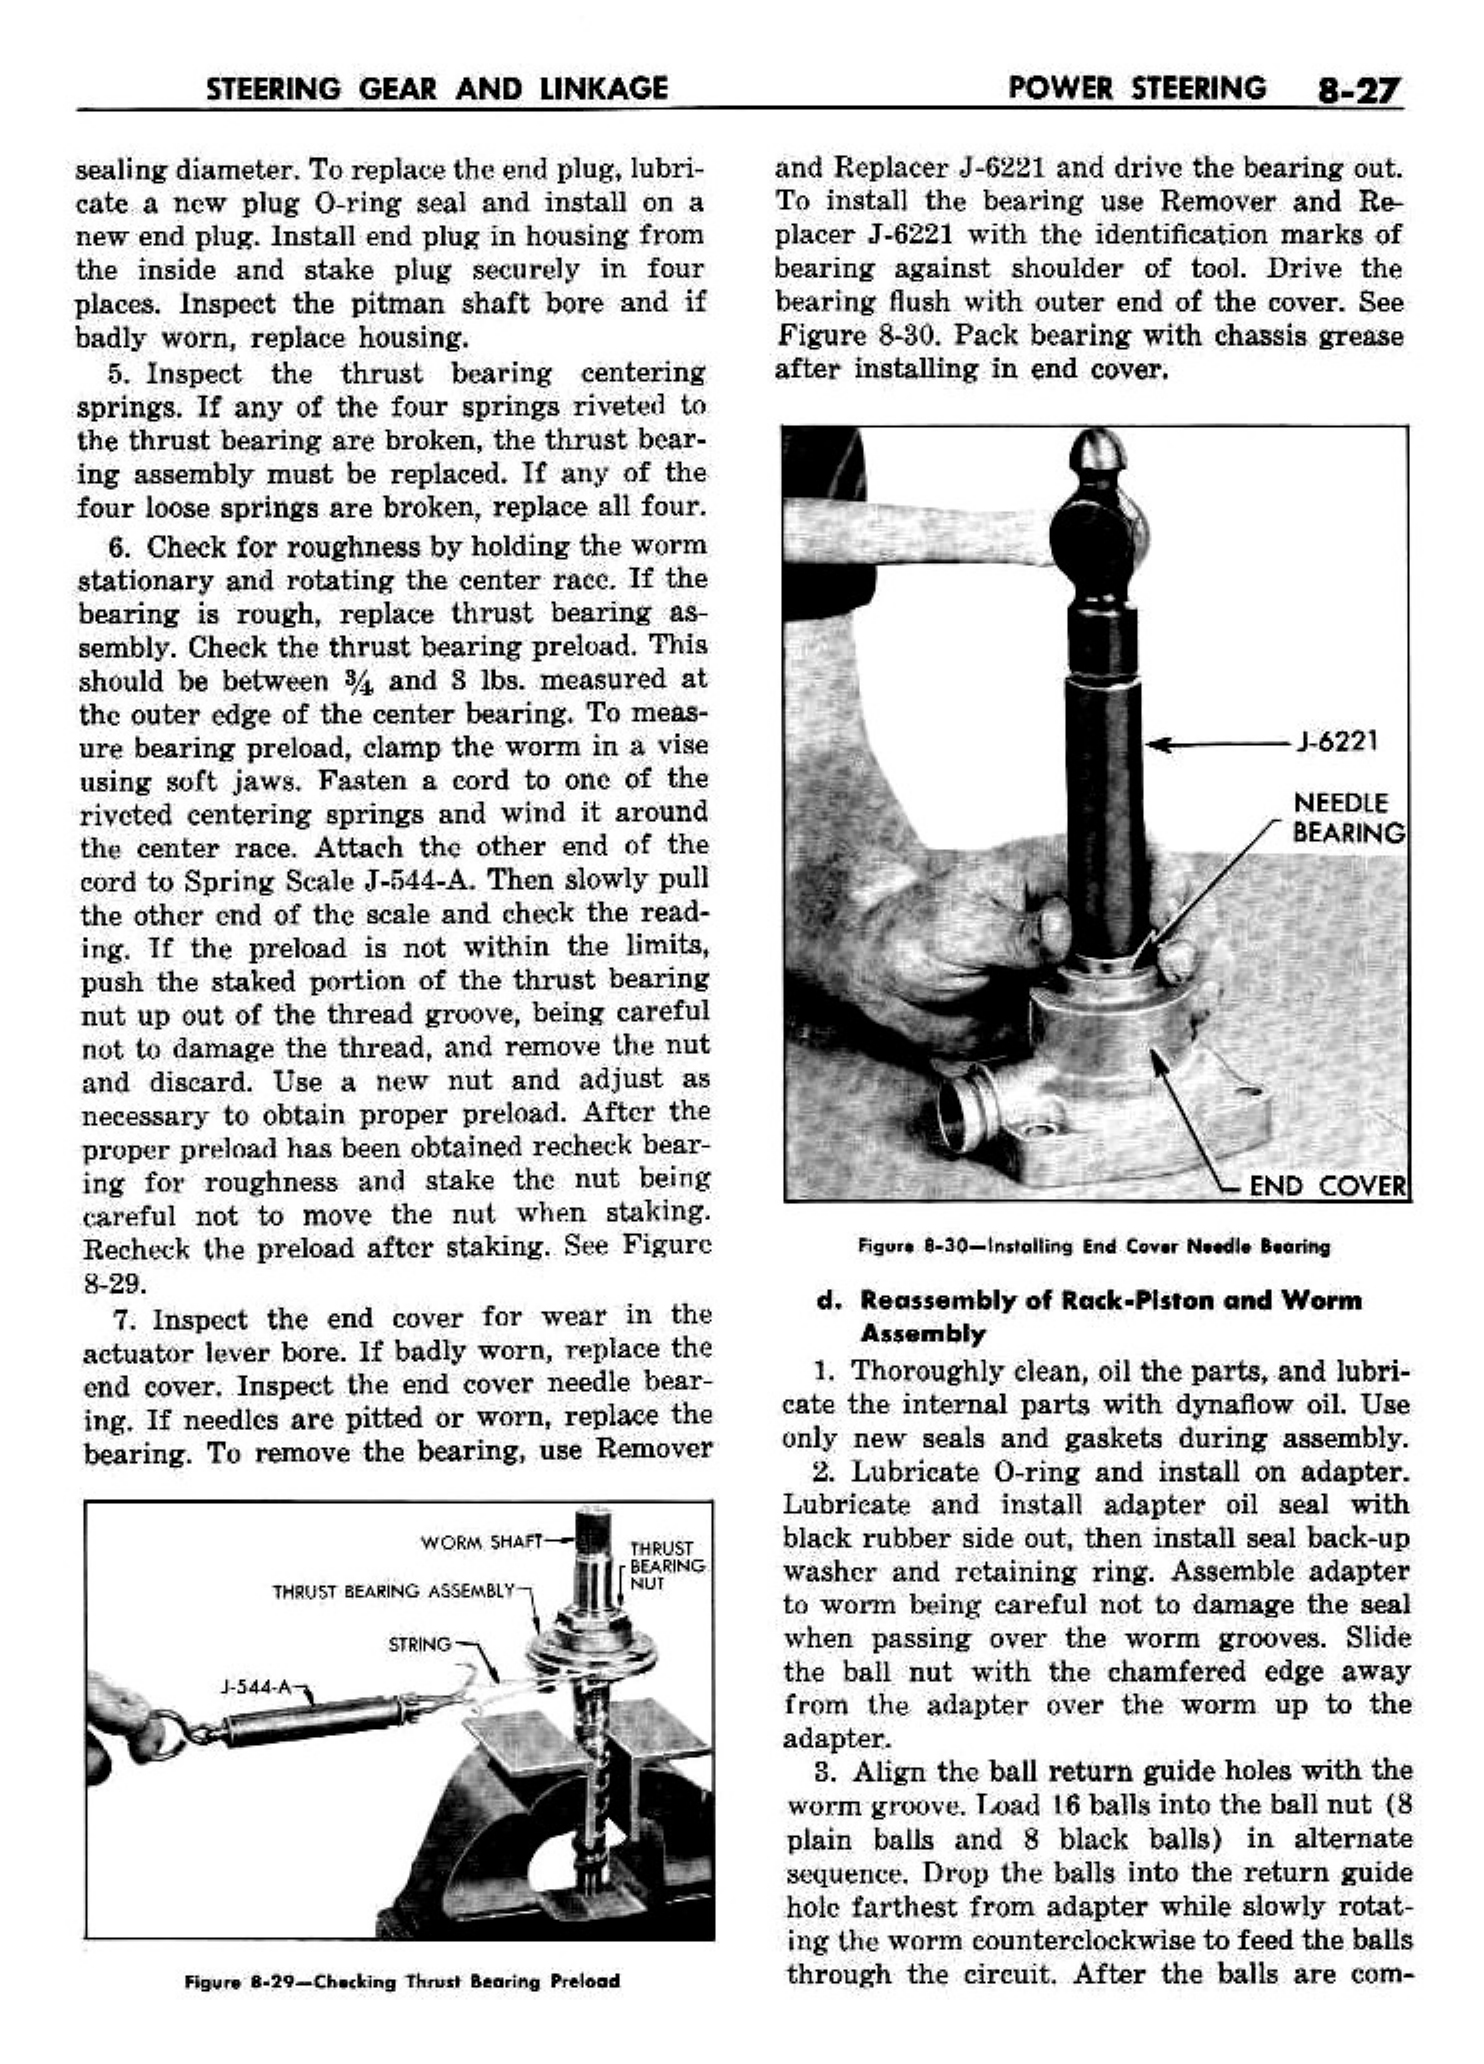 n_09 1958 Buick Shop Manual - Steering_27.jpg